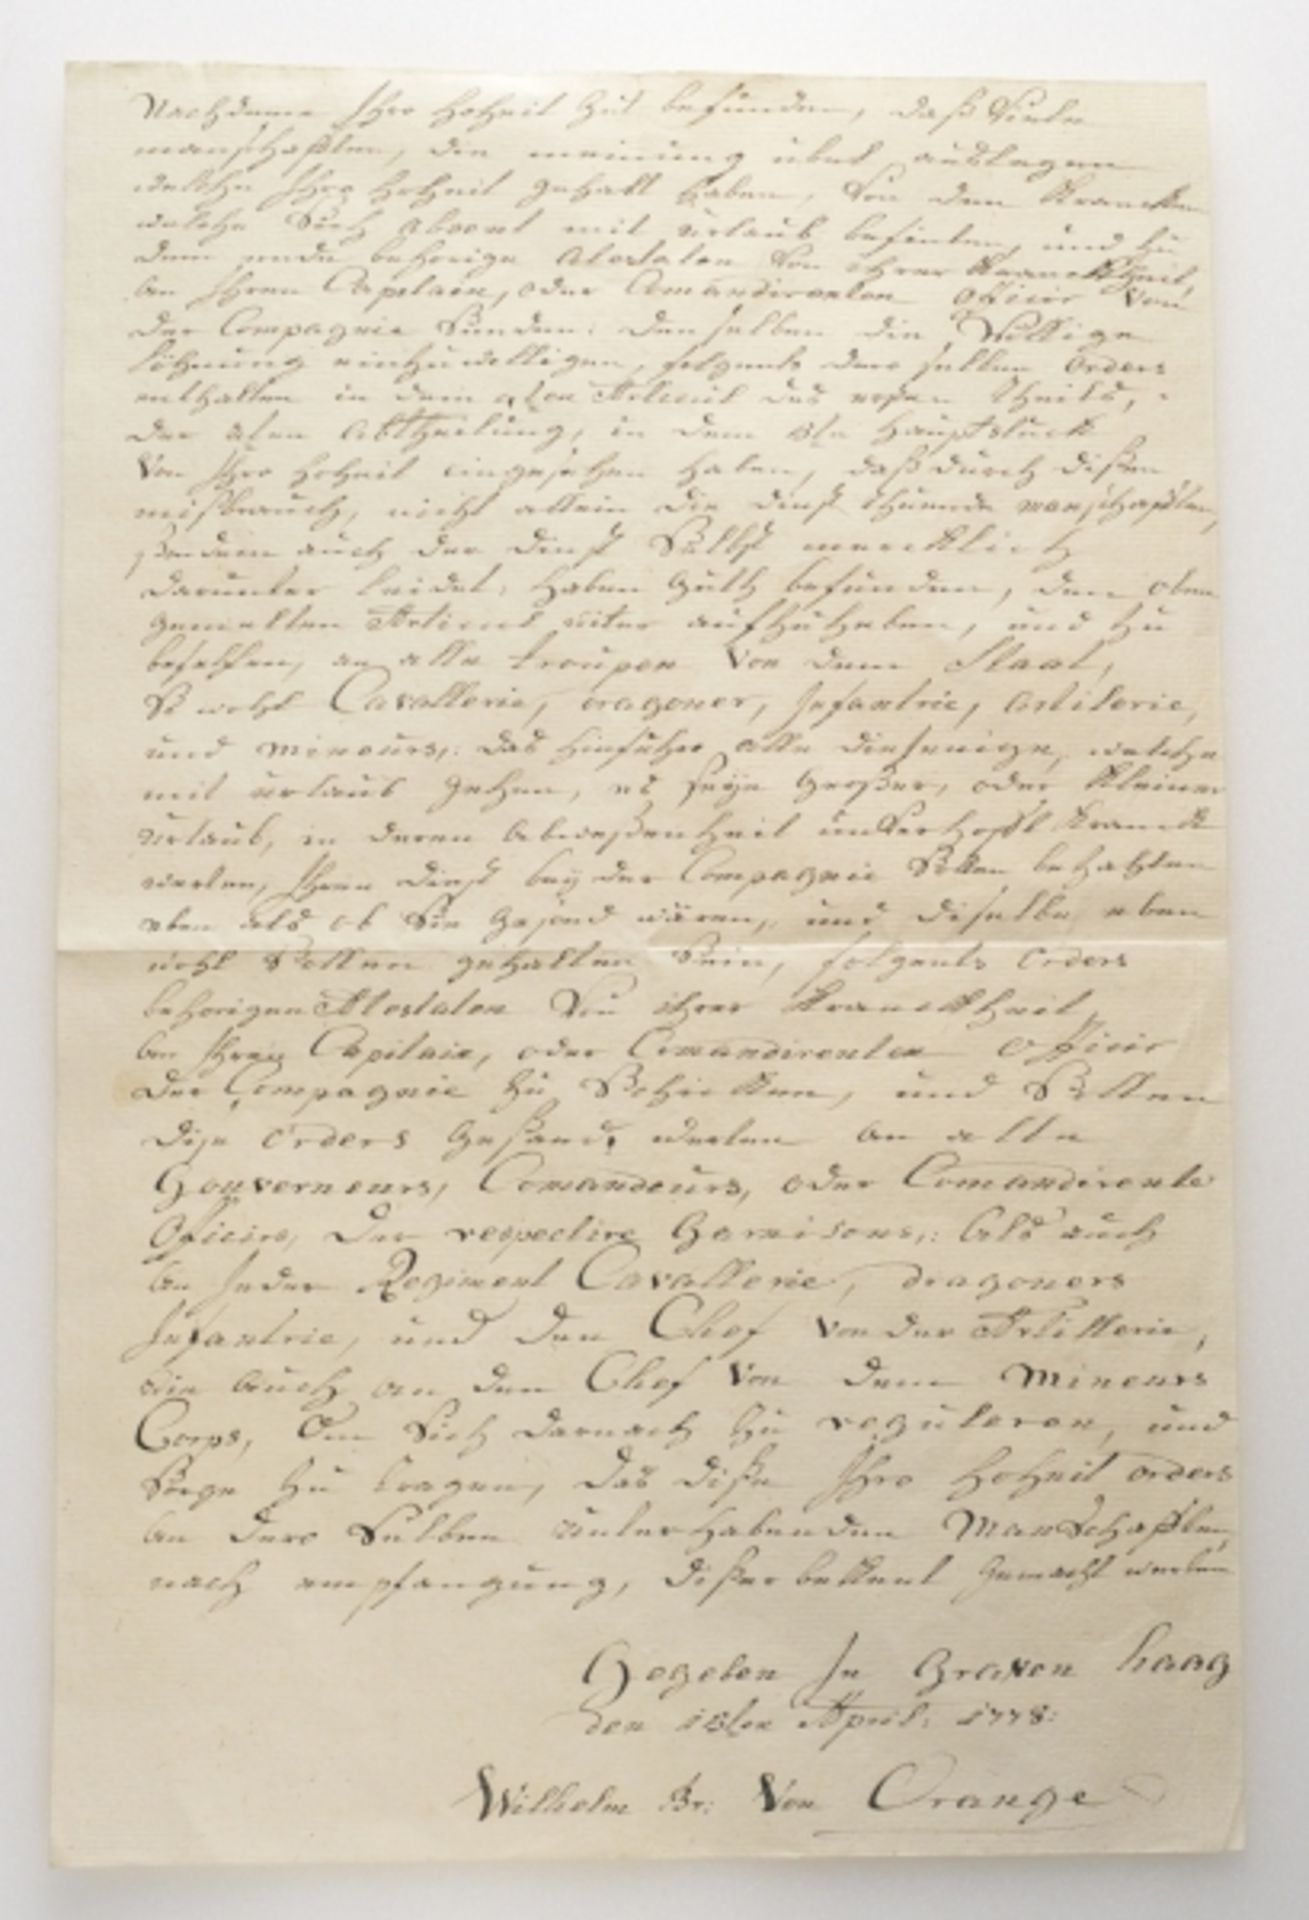 Orange, Wilhelm.Eigenhändiger Brief, gegeben in Graven Haag, April 1778.Zustand: II

Orange,